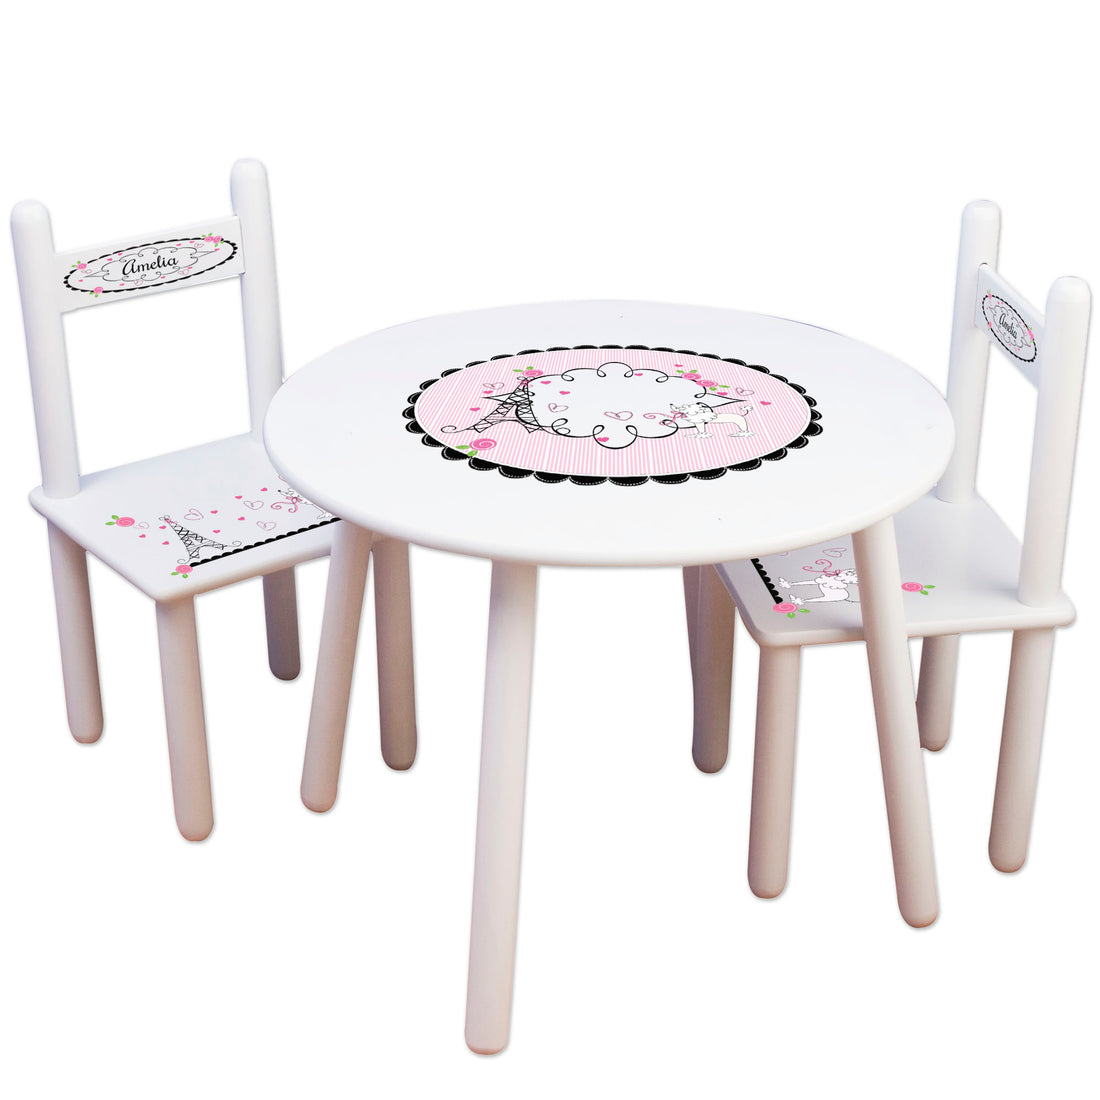 personalized paris france bistro table chair set